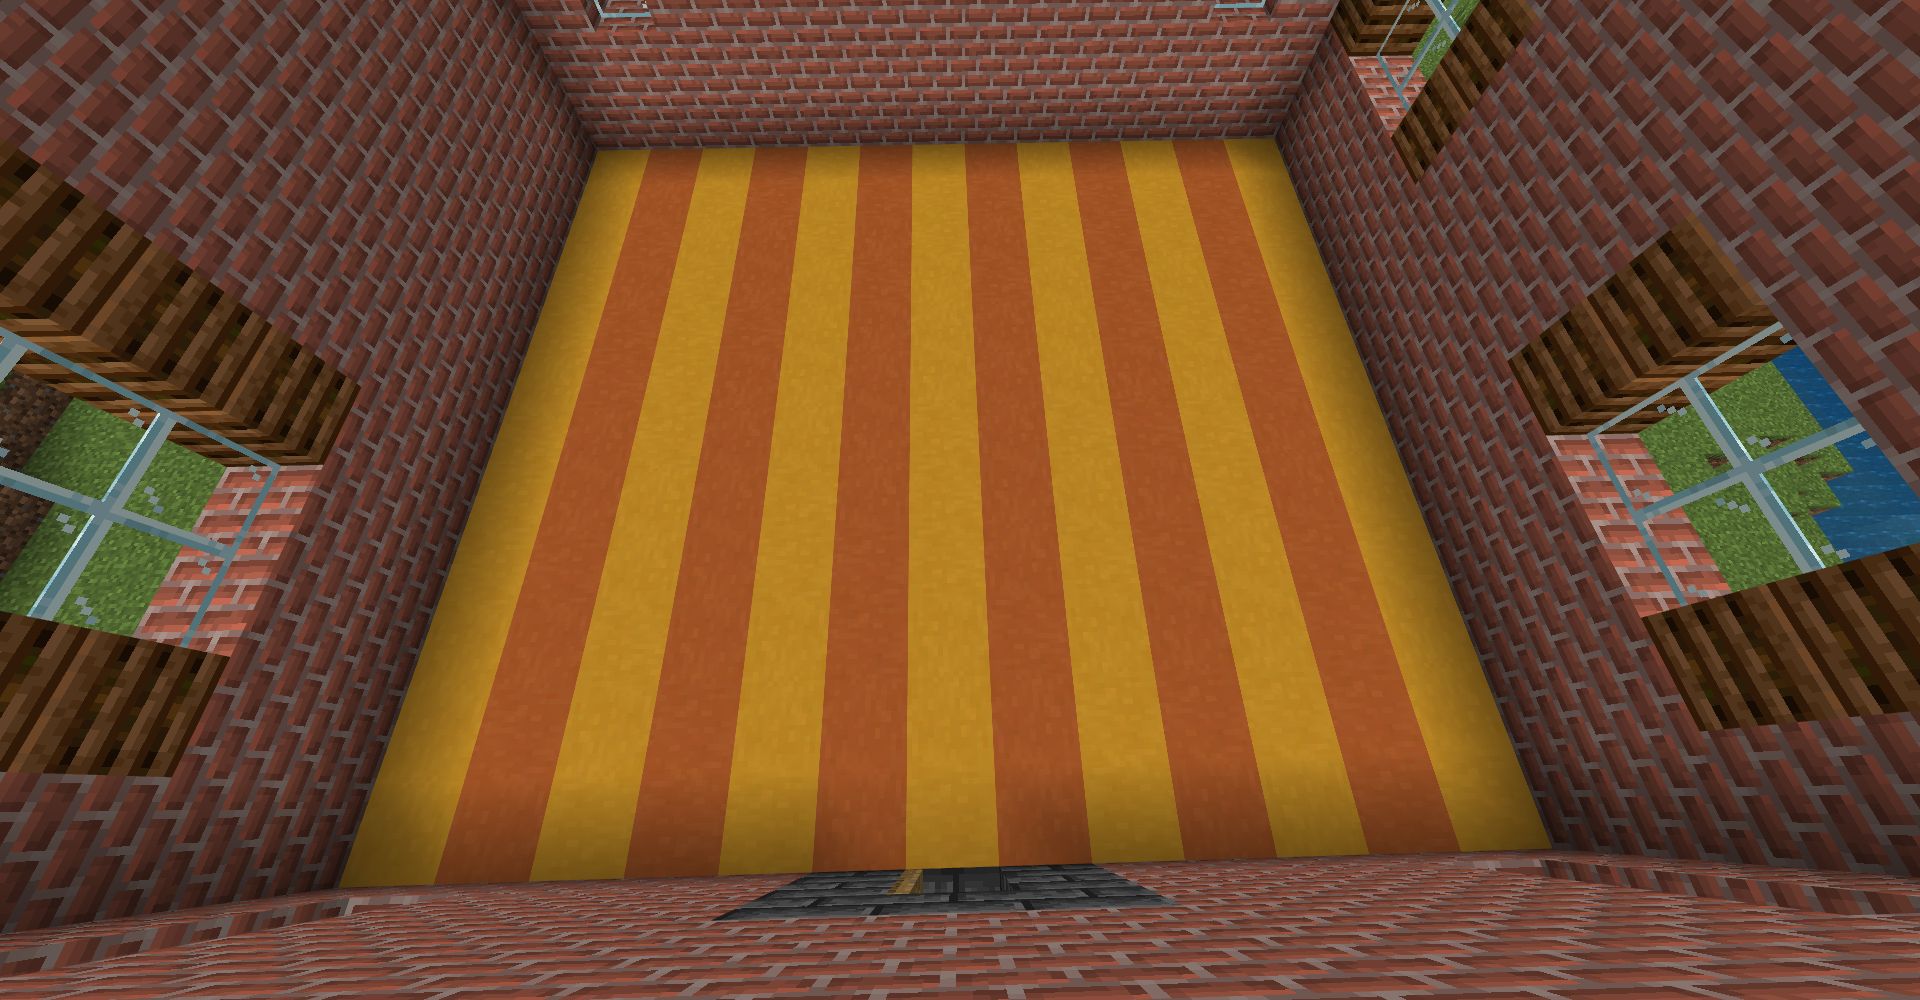 「黄色のテラコッタ」「橙色のテラコッタ」で床を作る